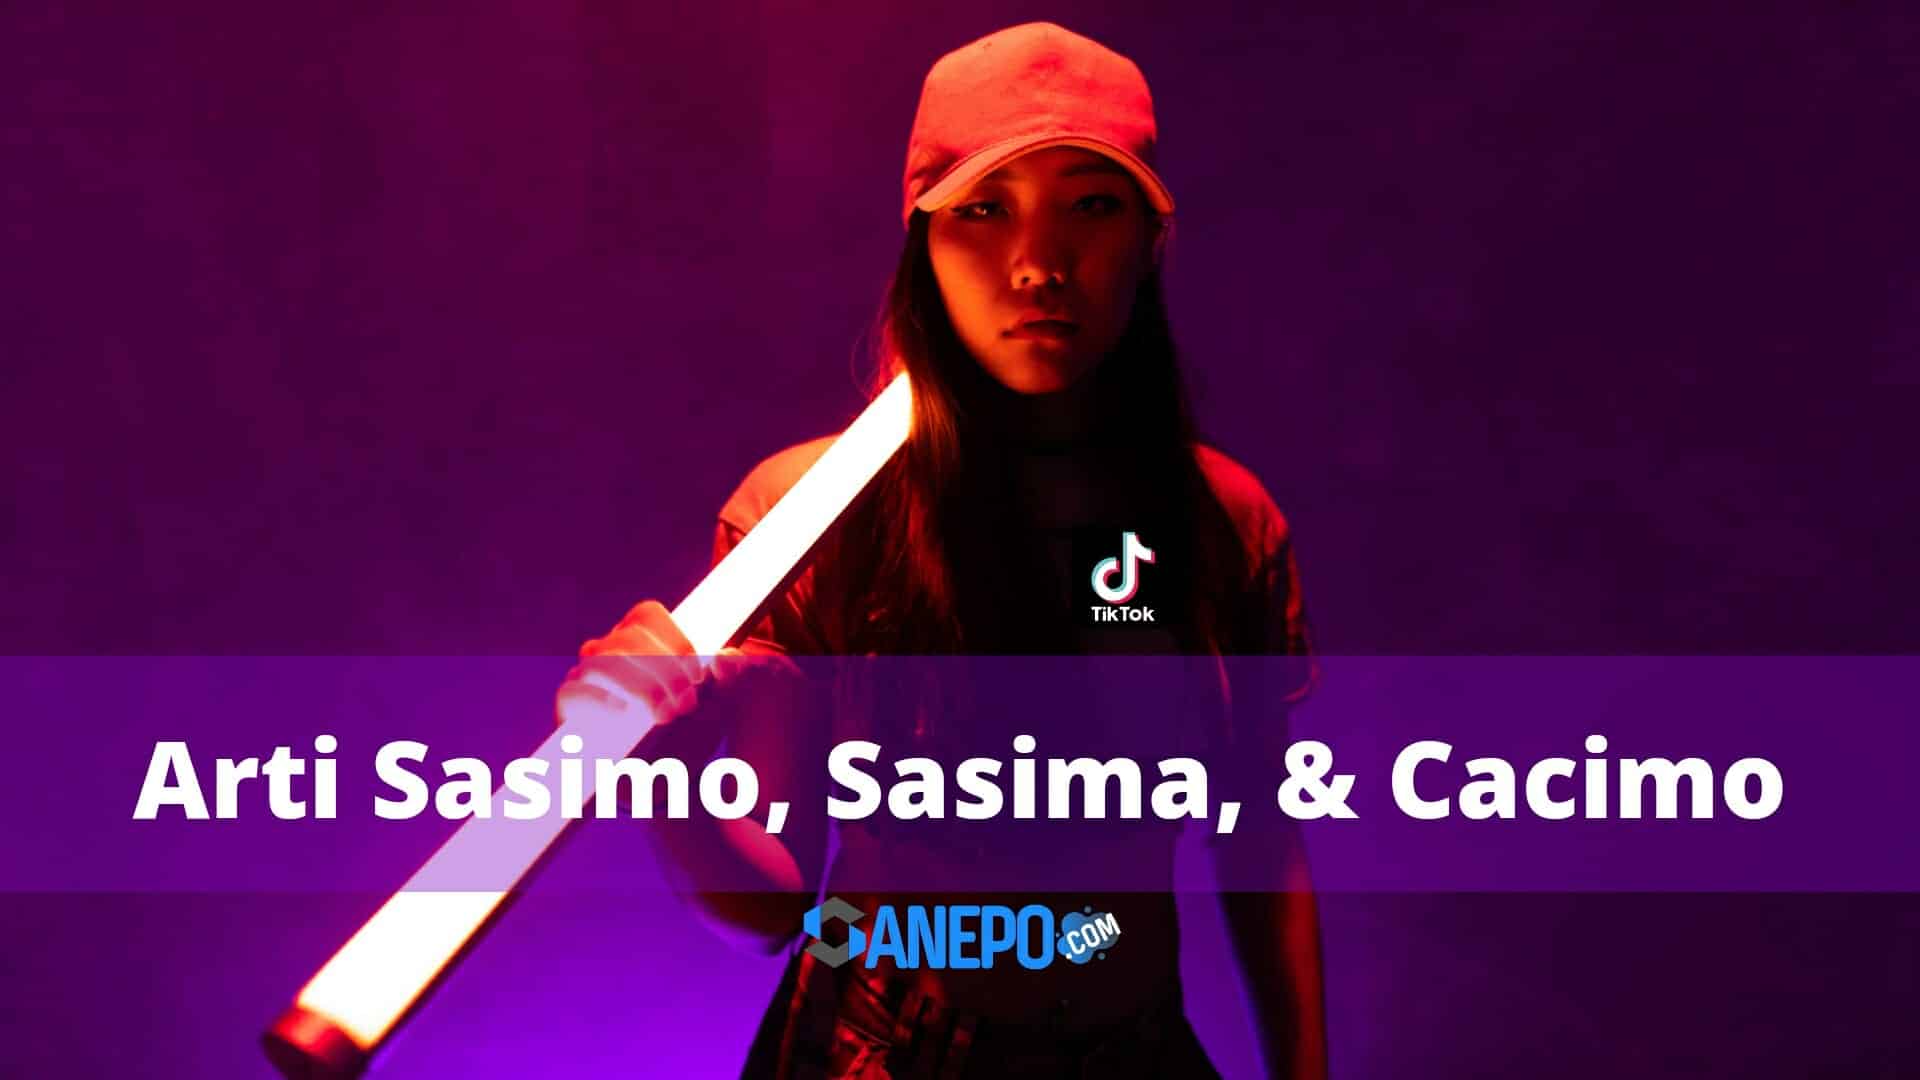 Apa Arti Sasimo, Sasima, & Cacimo dalam bahasa gaul?